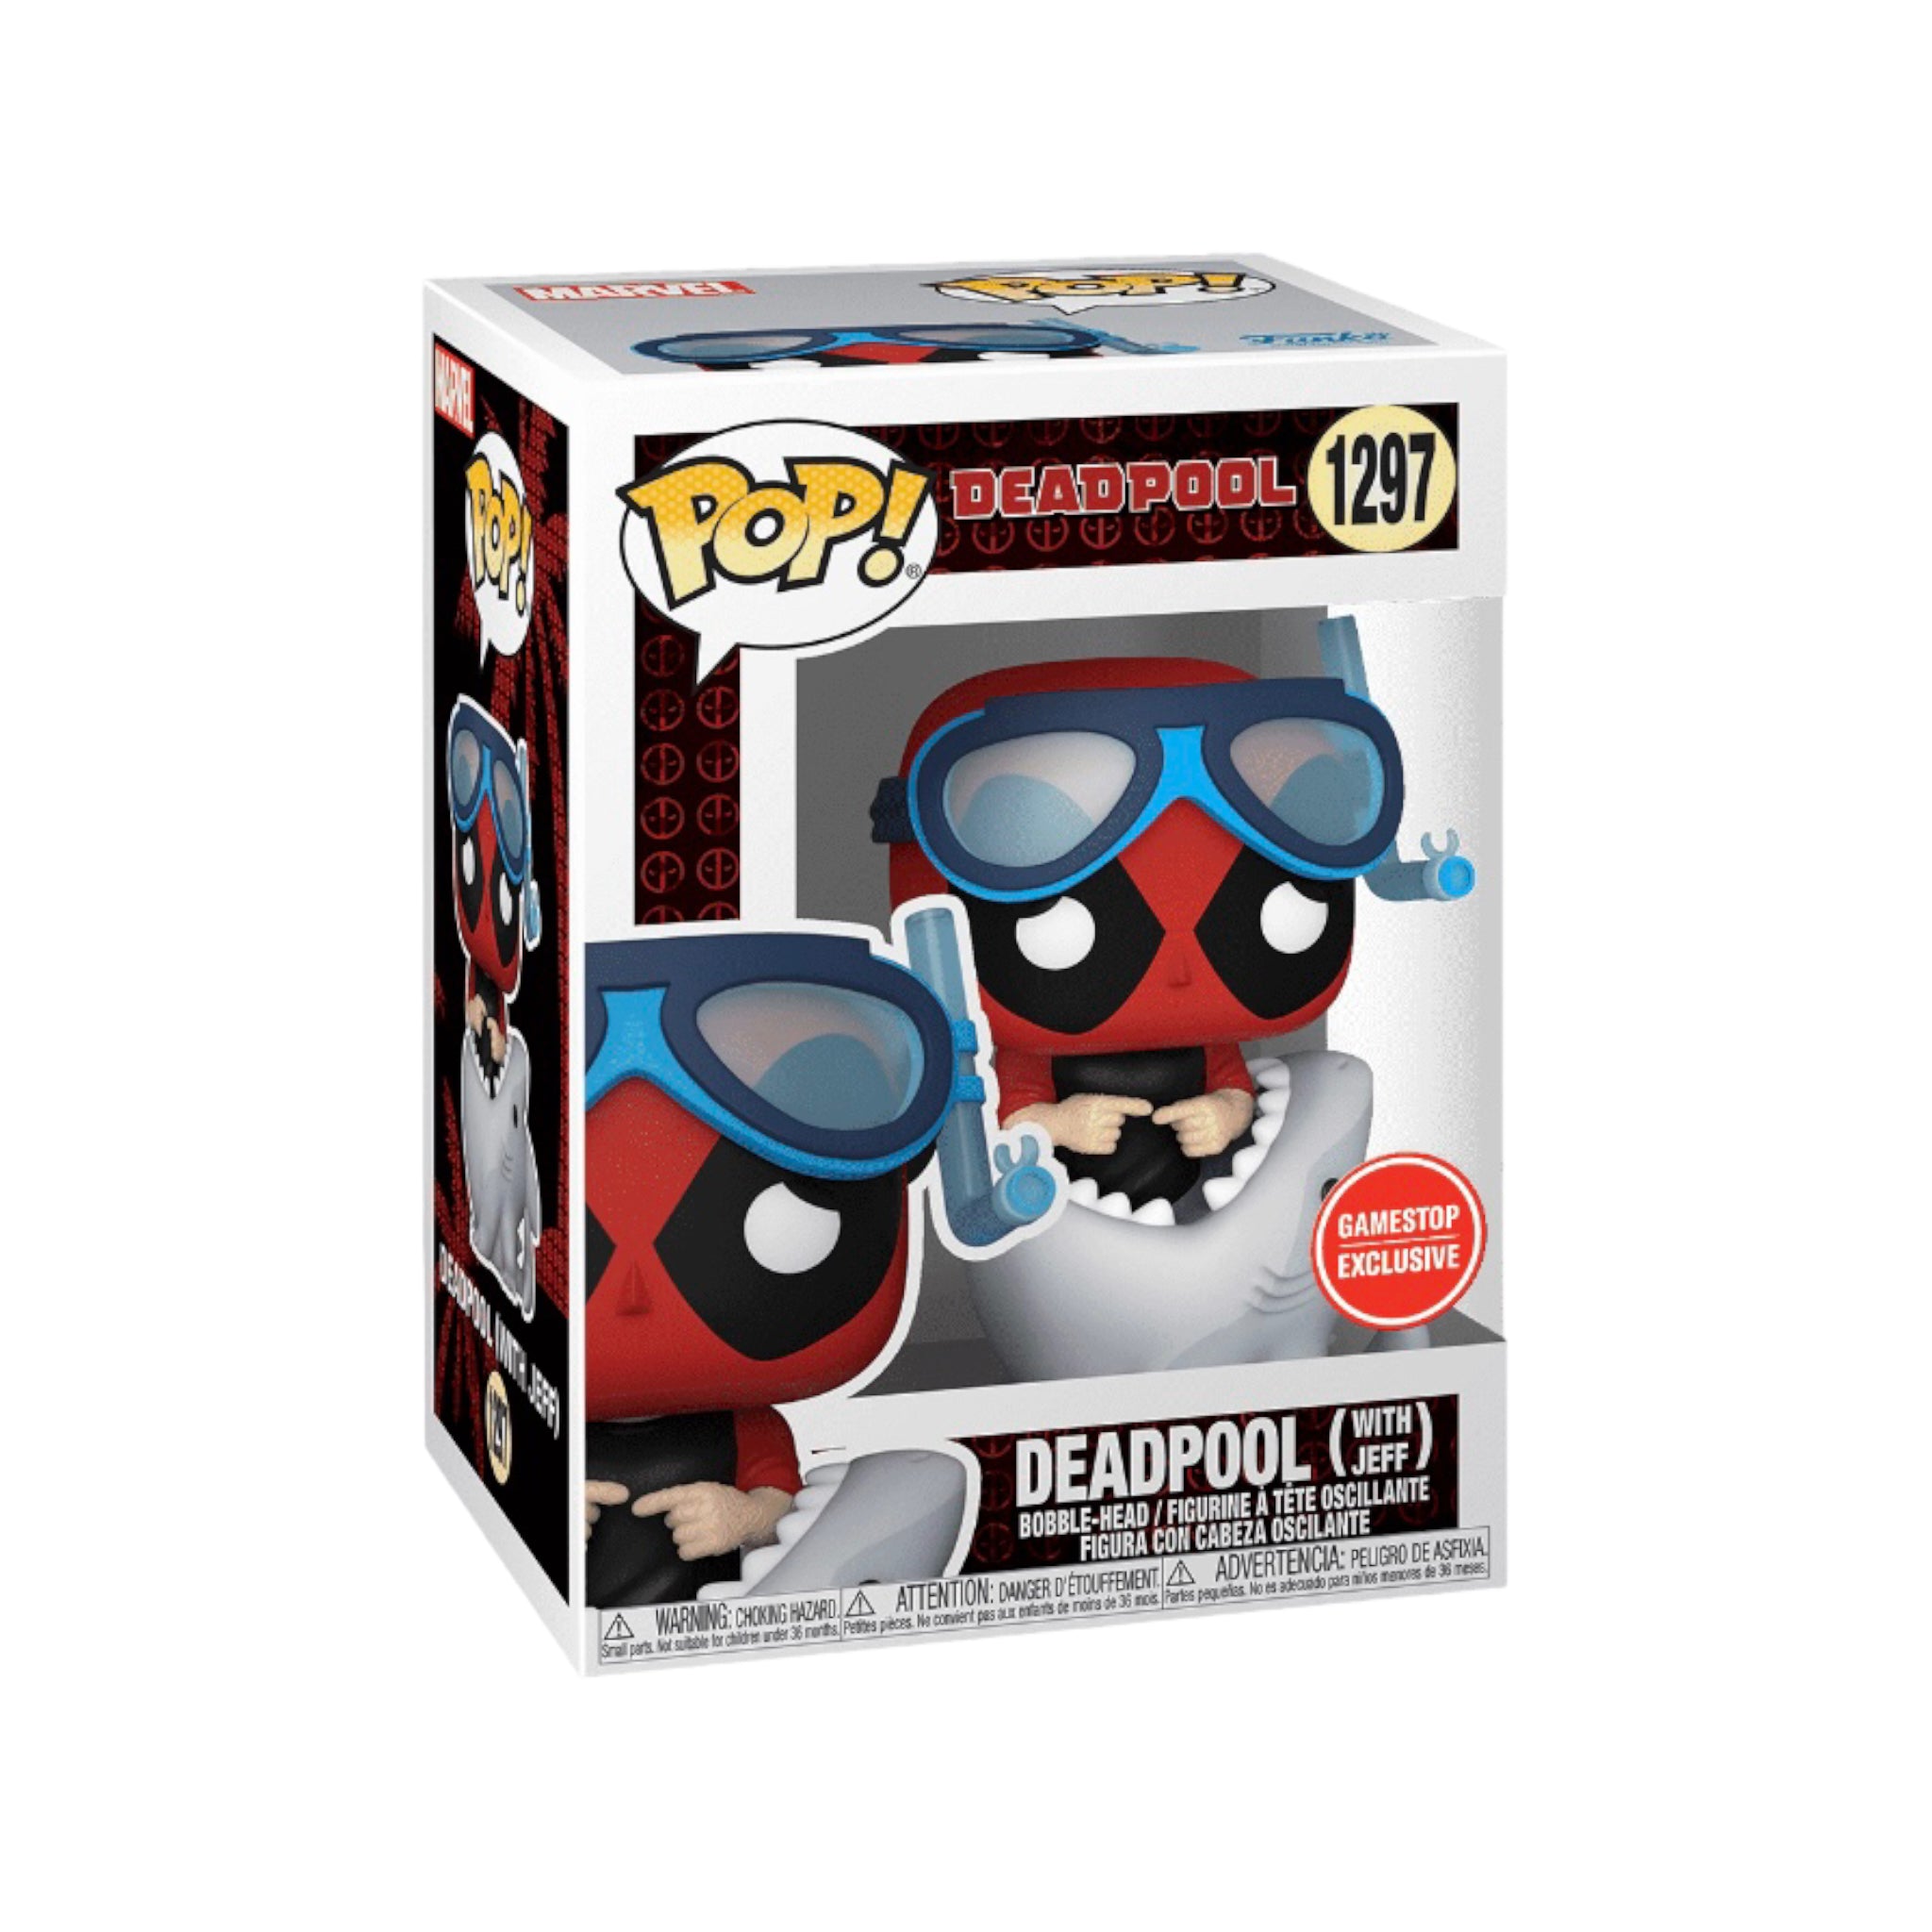 Deadpool (With Jeff) #1297 Funko Pop! - Deadpool - GameStop Exclusive